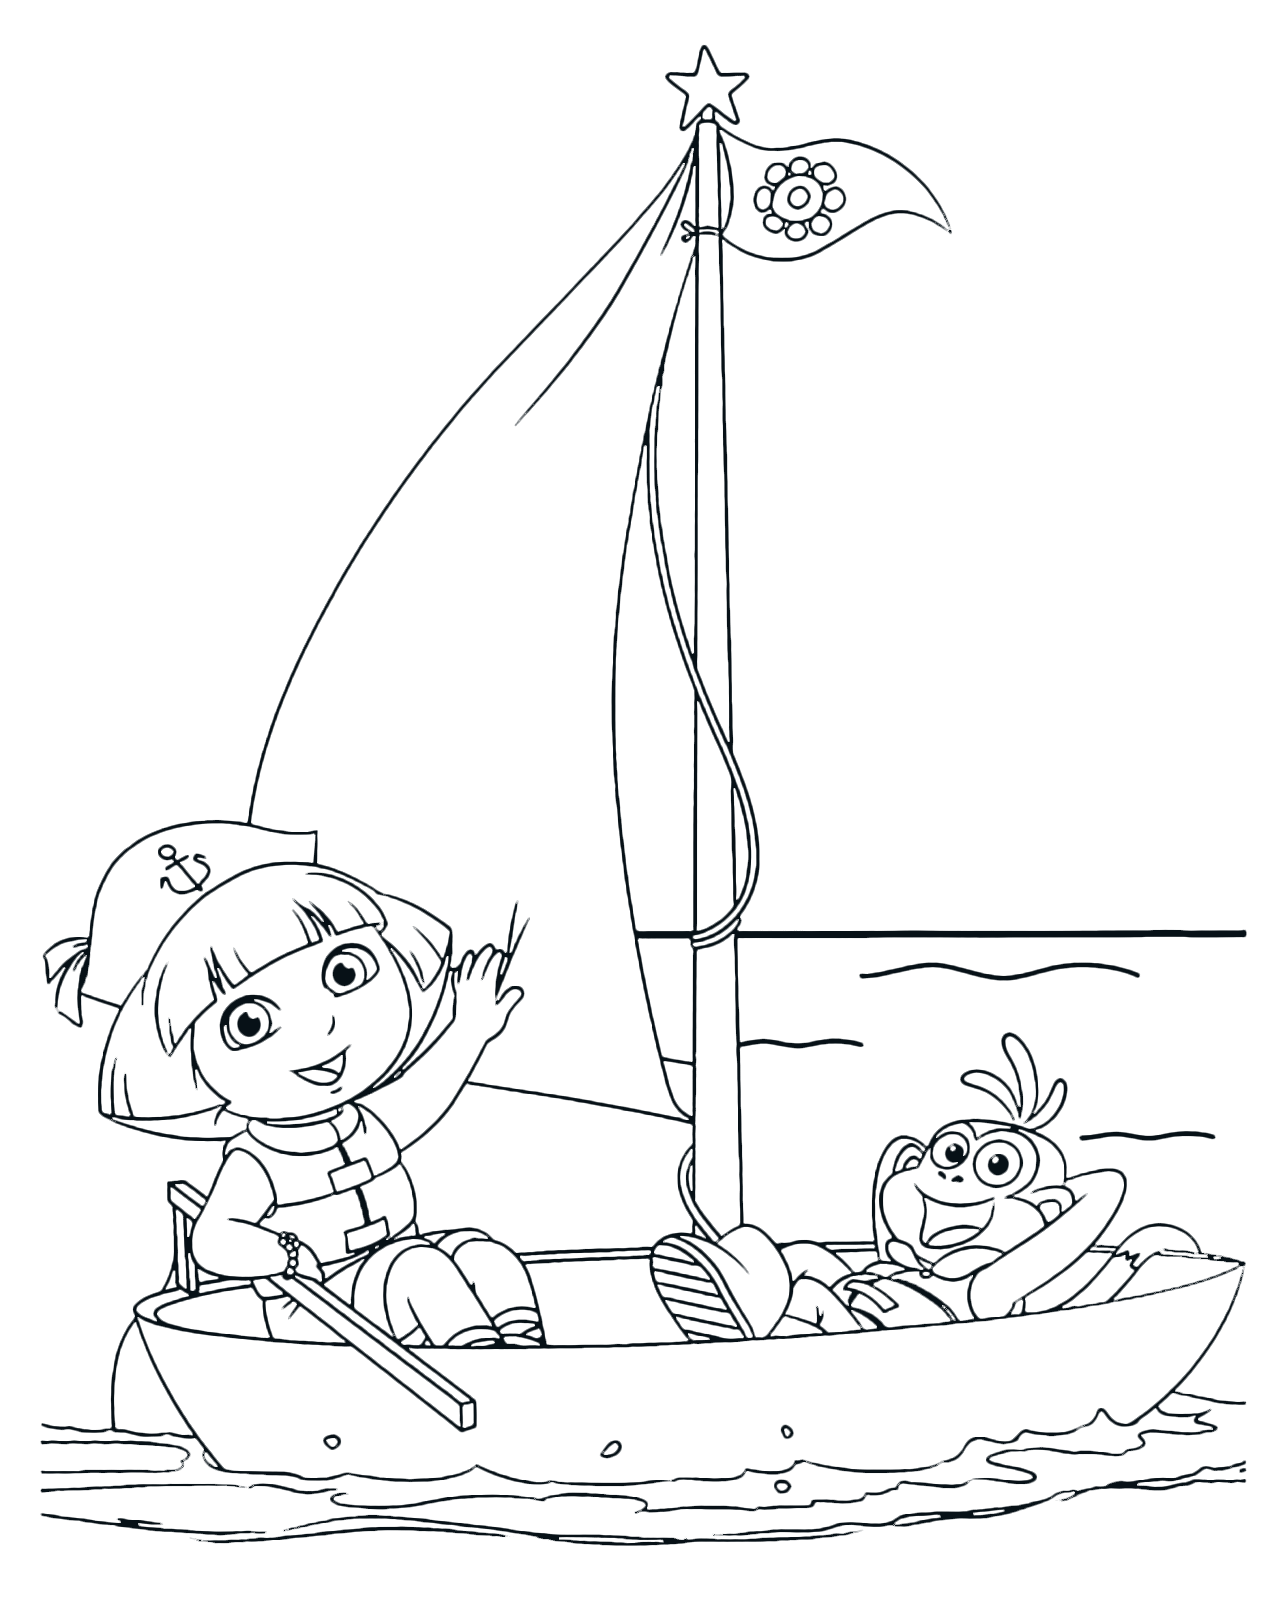 Dora l'esploratrice - Dora e Boots sulla barca a vela